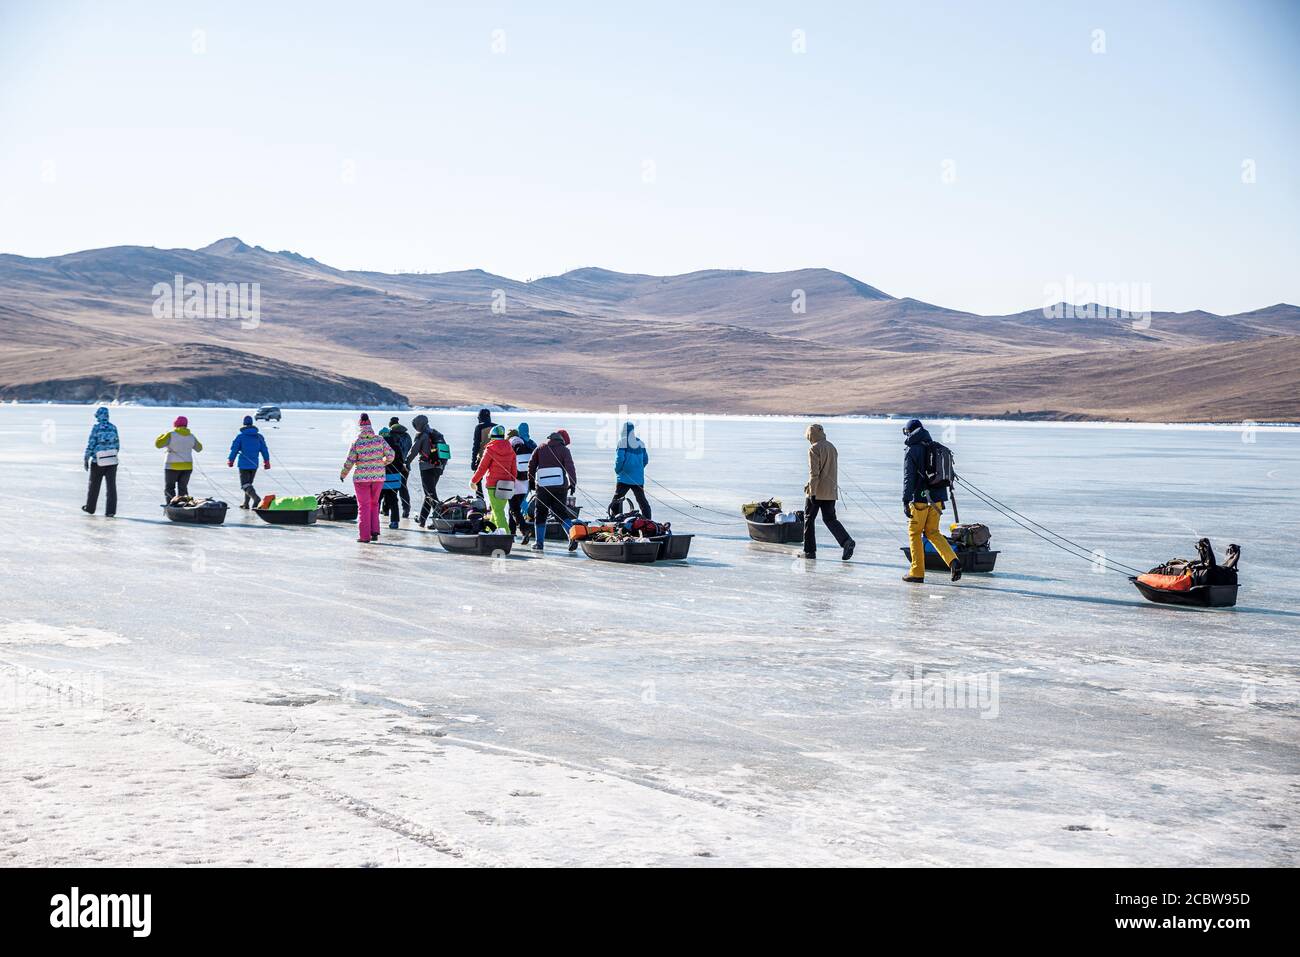 Un grupo de turistas con trineos de hielo caminando sobre la superficie congelada del lago Baikal, Rusia Foto de stock